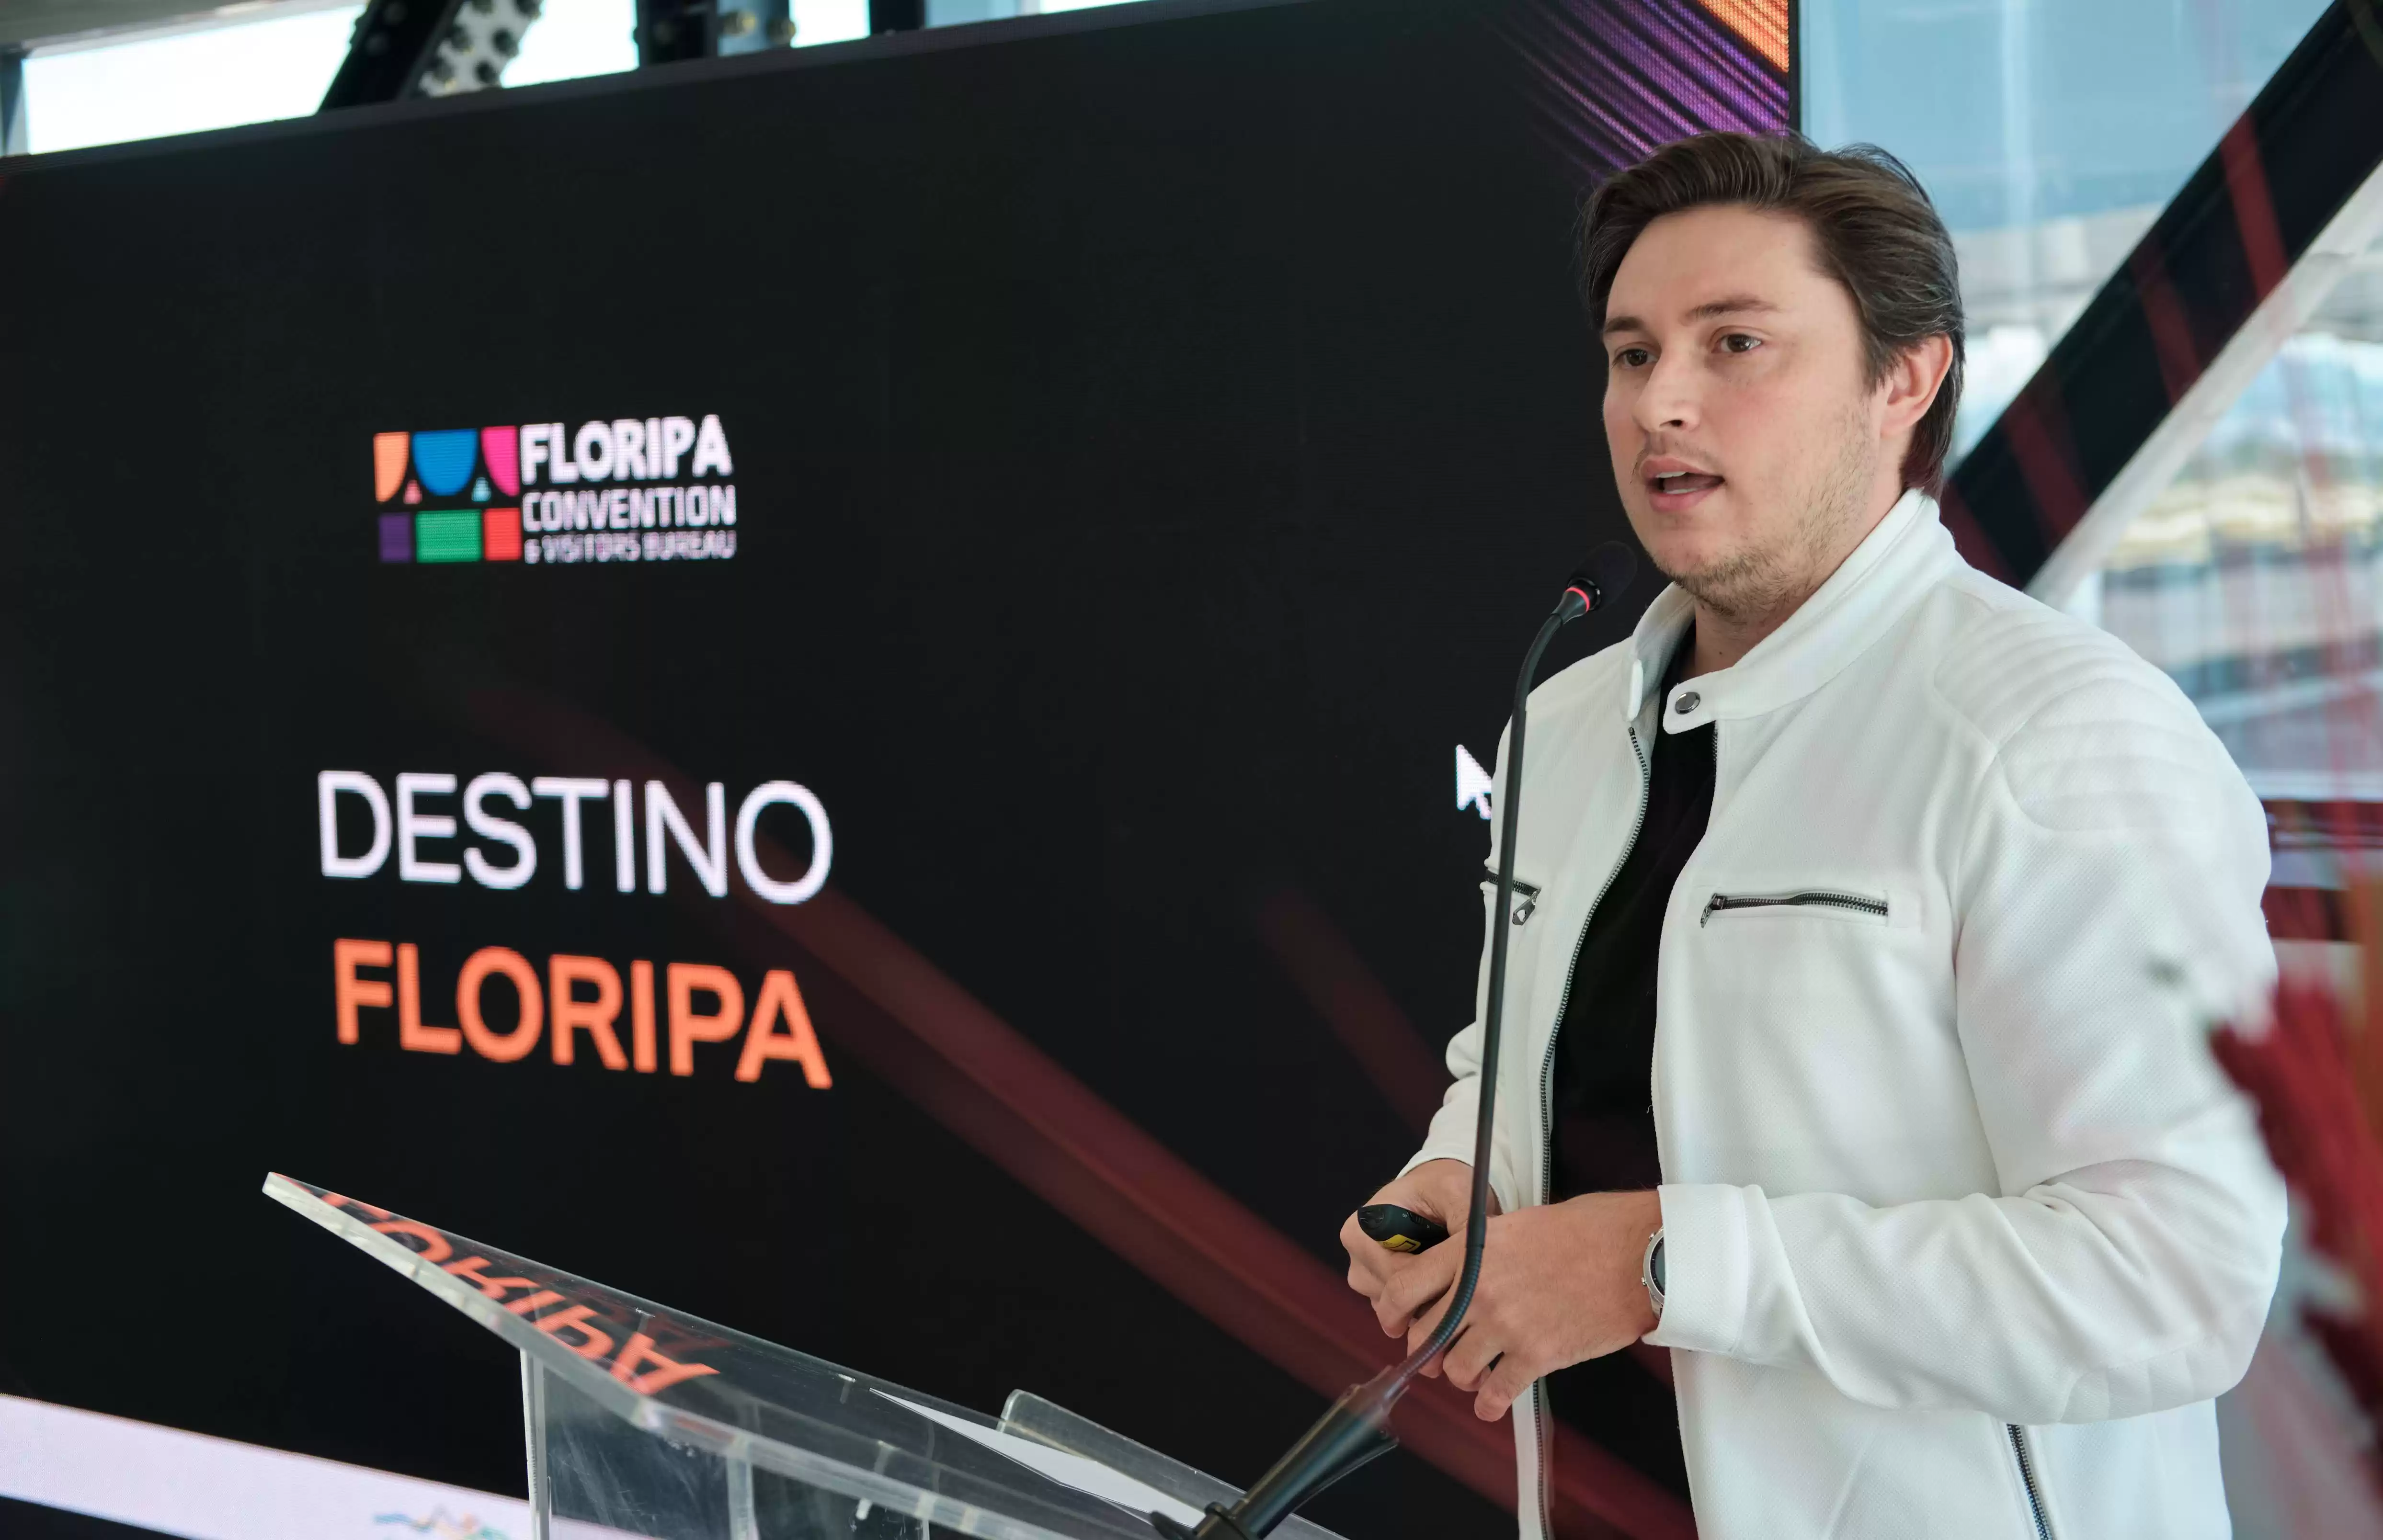 Destino Floripa, novo nome do Floripa Convention, lança nova identidade visual